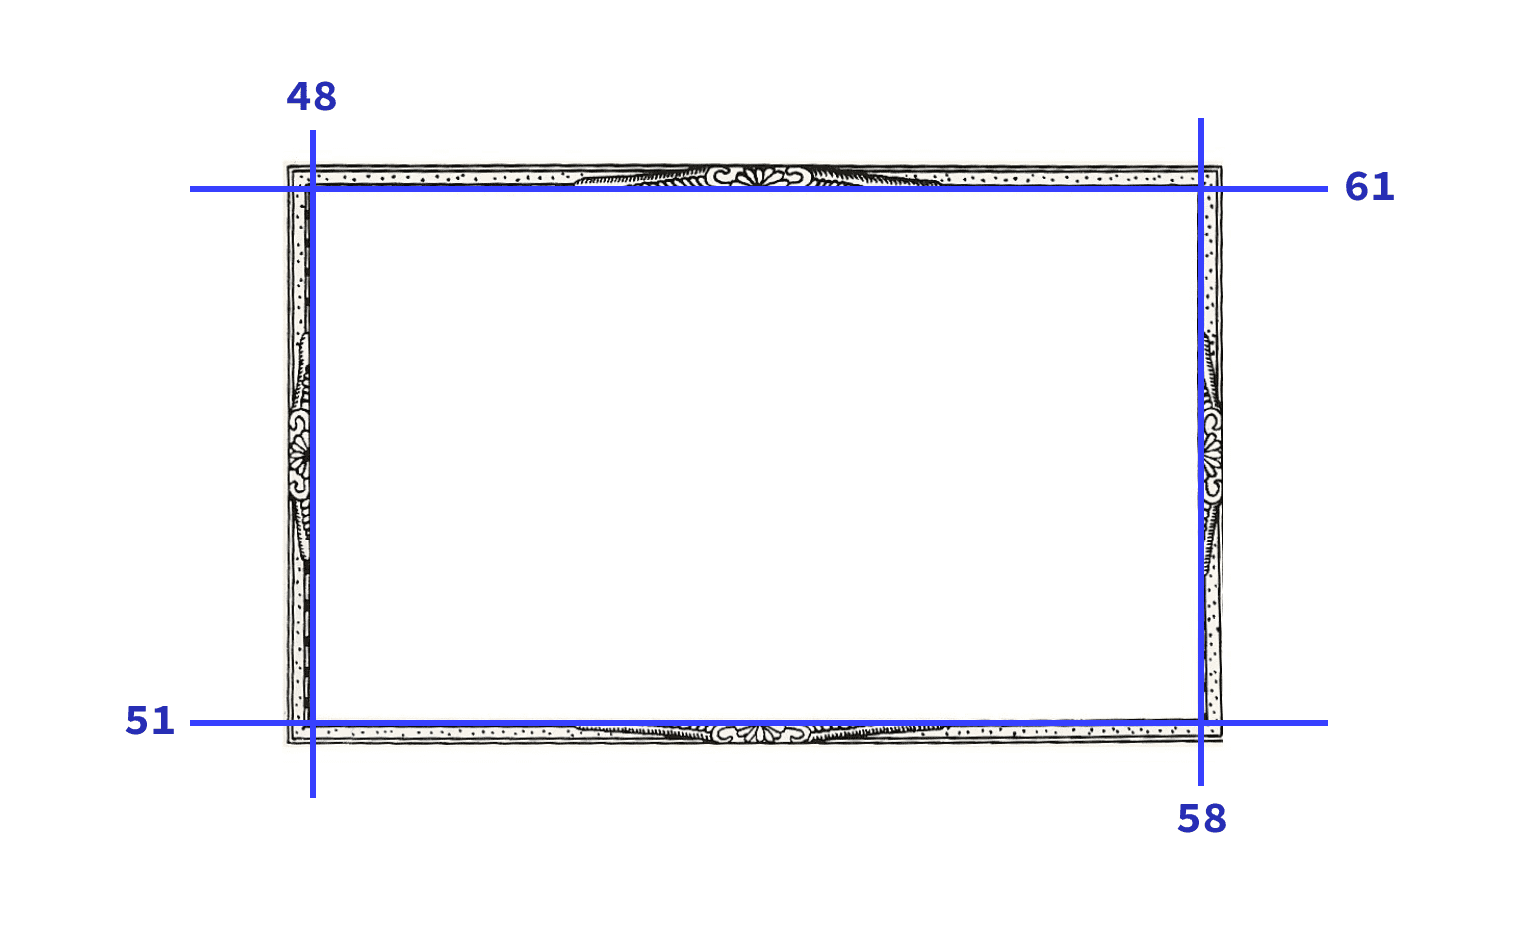 Imagem usada na demonstração com as quatro fatias exibidas com linhas azuis